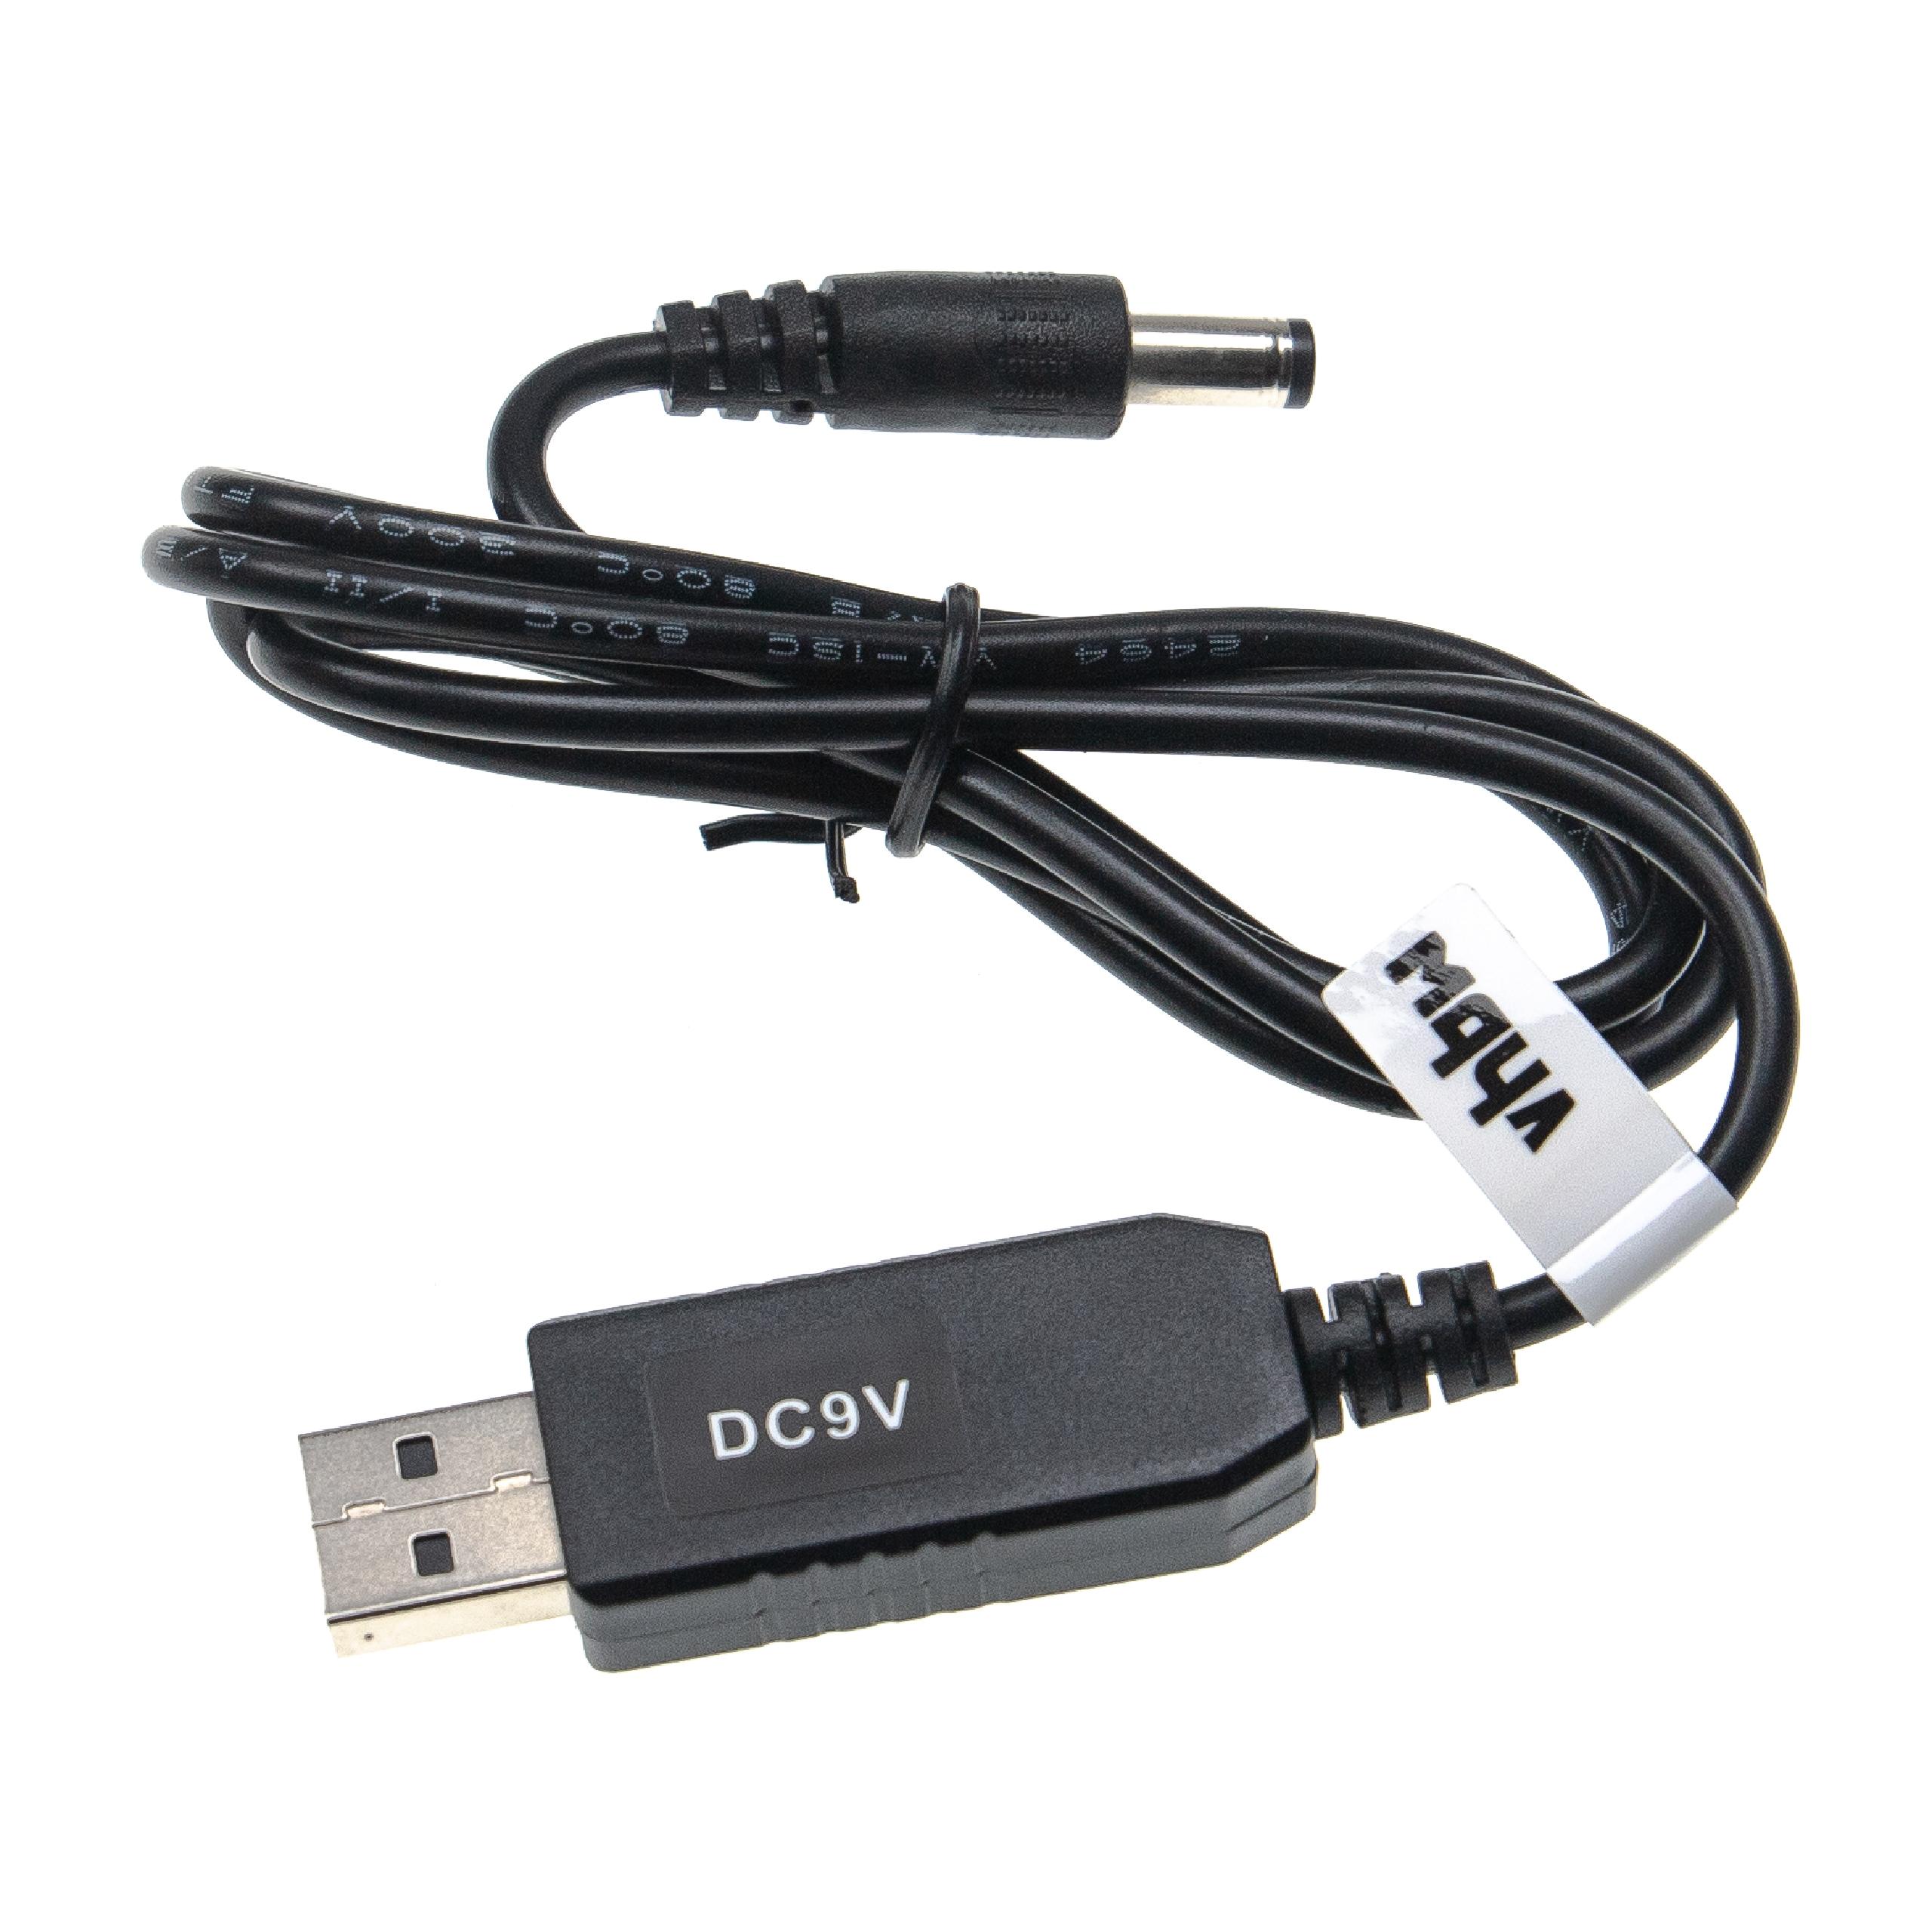 Cable de carga USB a coaxial 5,5 x 2,5 mm - 5 V / 2 A a 9 V / 0,9 A 